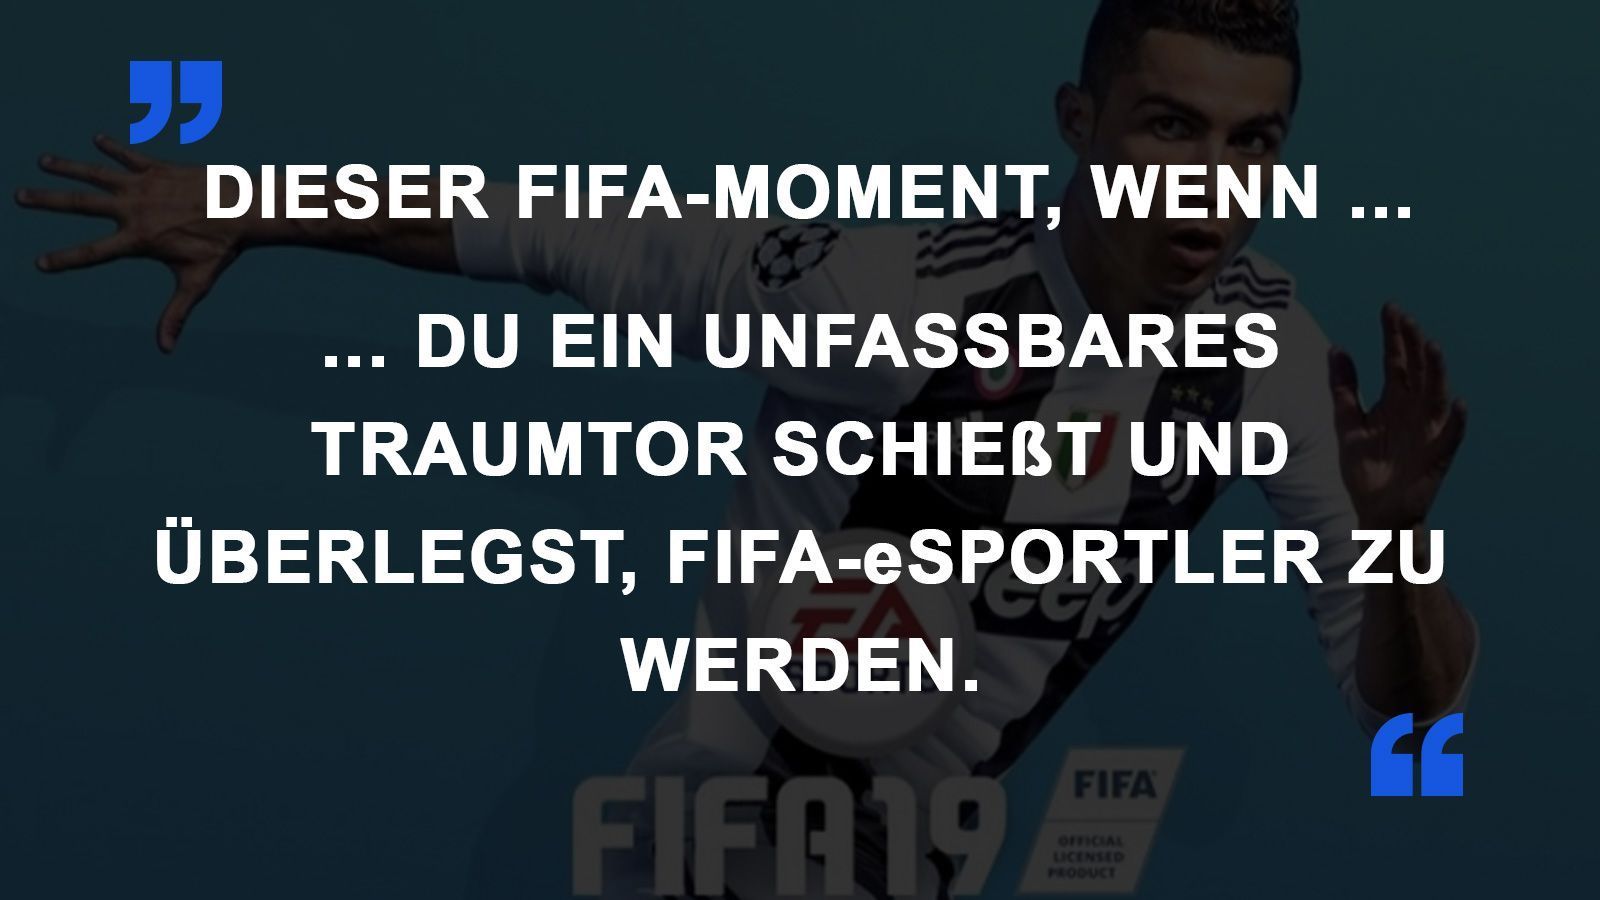 
                <strong>FIFA Momente eSportler</strong><br>
                
              